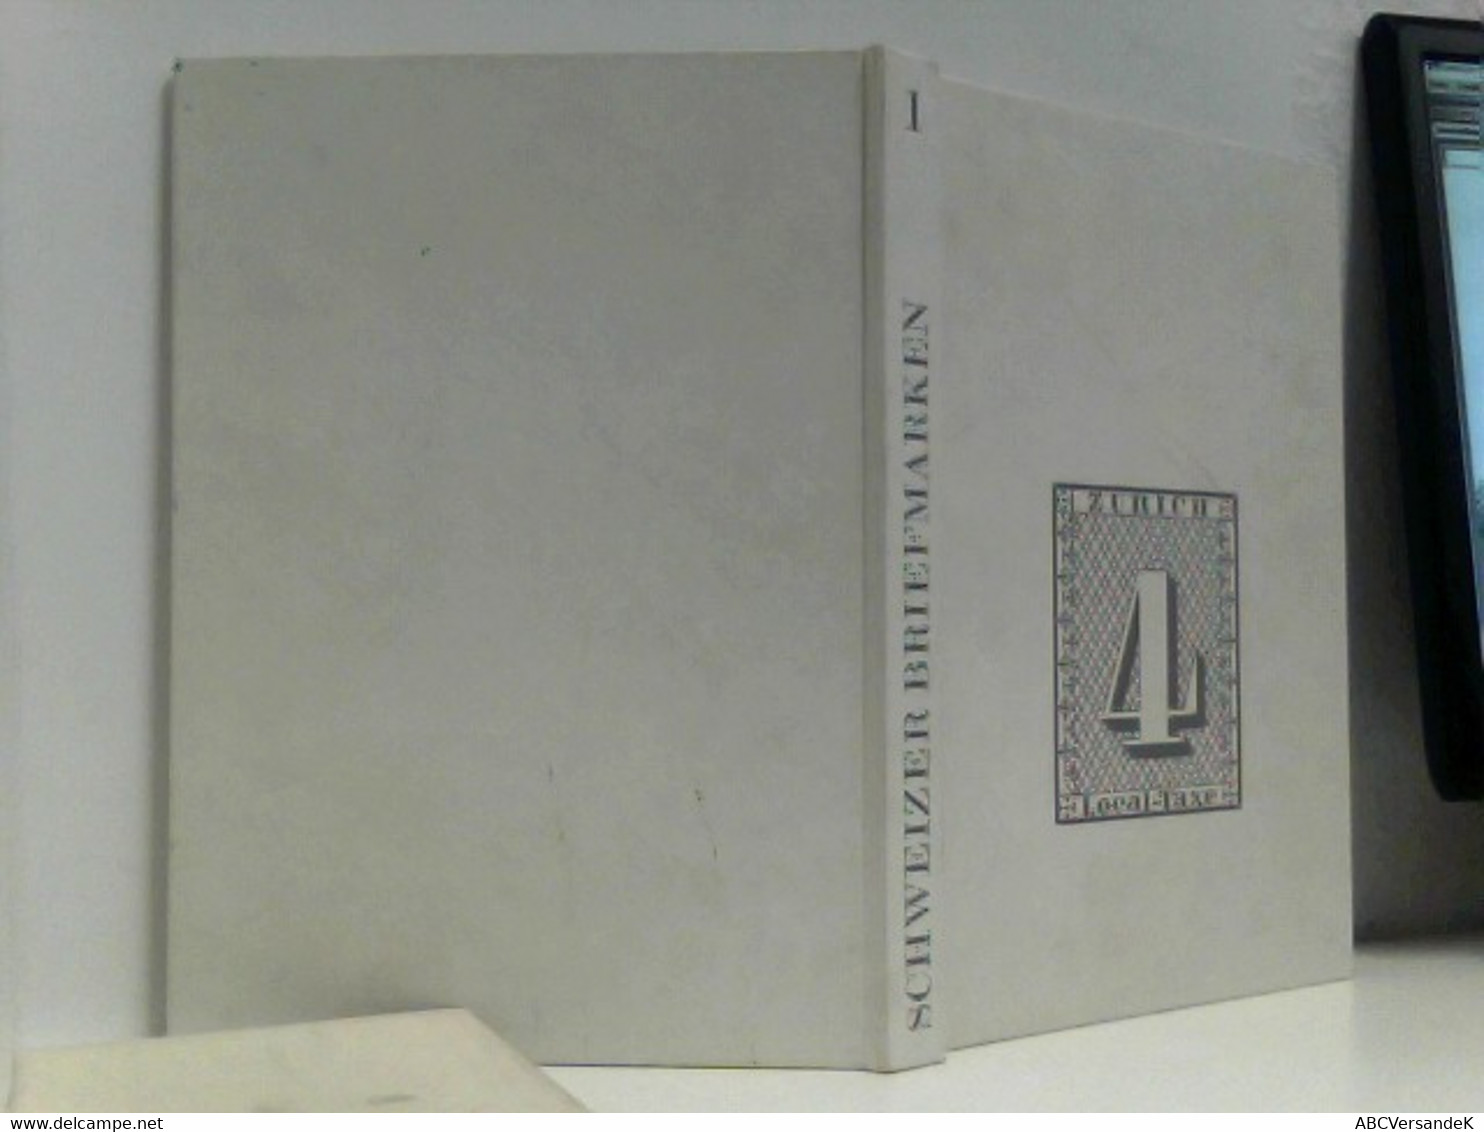 Hertsch Schweizer Briefmarken Zürich, Silva,1973., Band 1. 4to. 104,, Zahlr. Mont. Farb. Tafeln. Ppbdn. M. OU. - Philatélie